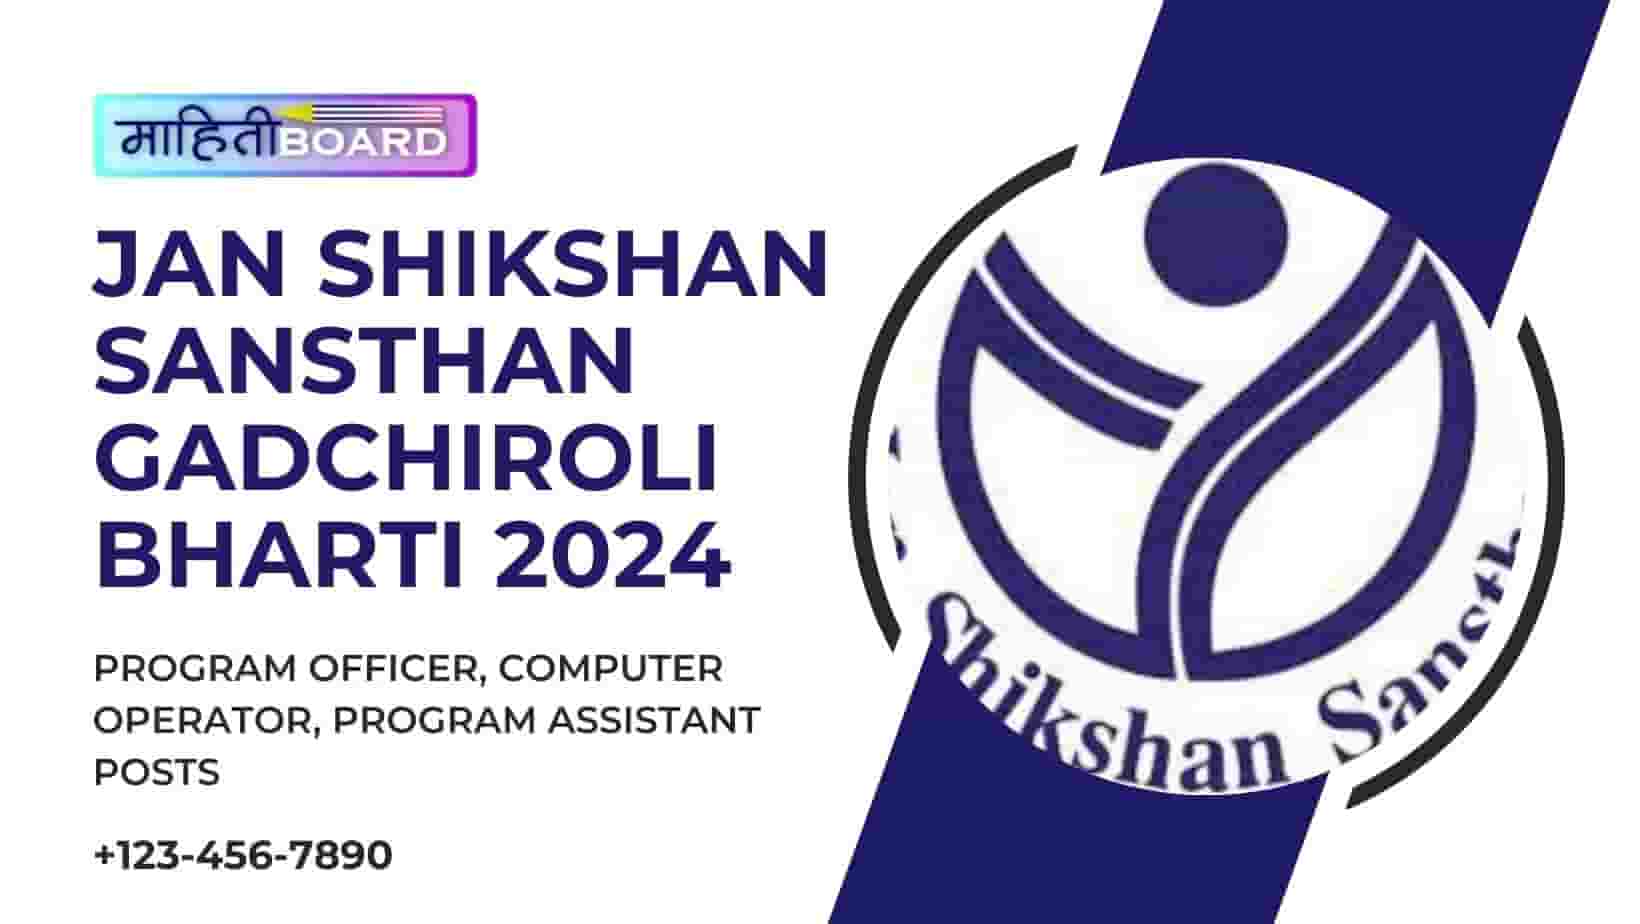 Jan Shikshan Sansthan Gadchiroli Bharti 2024